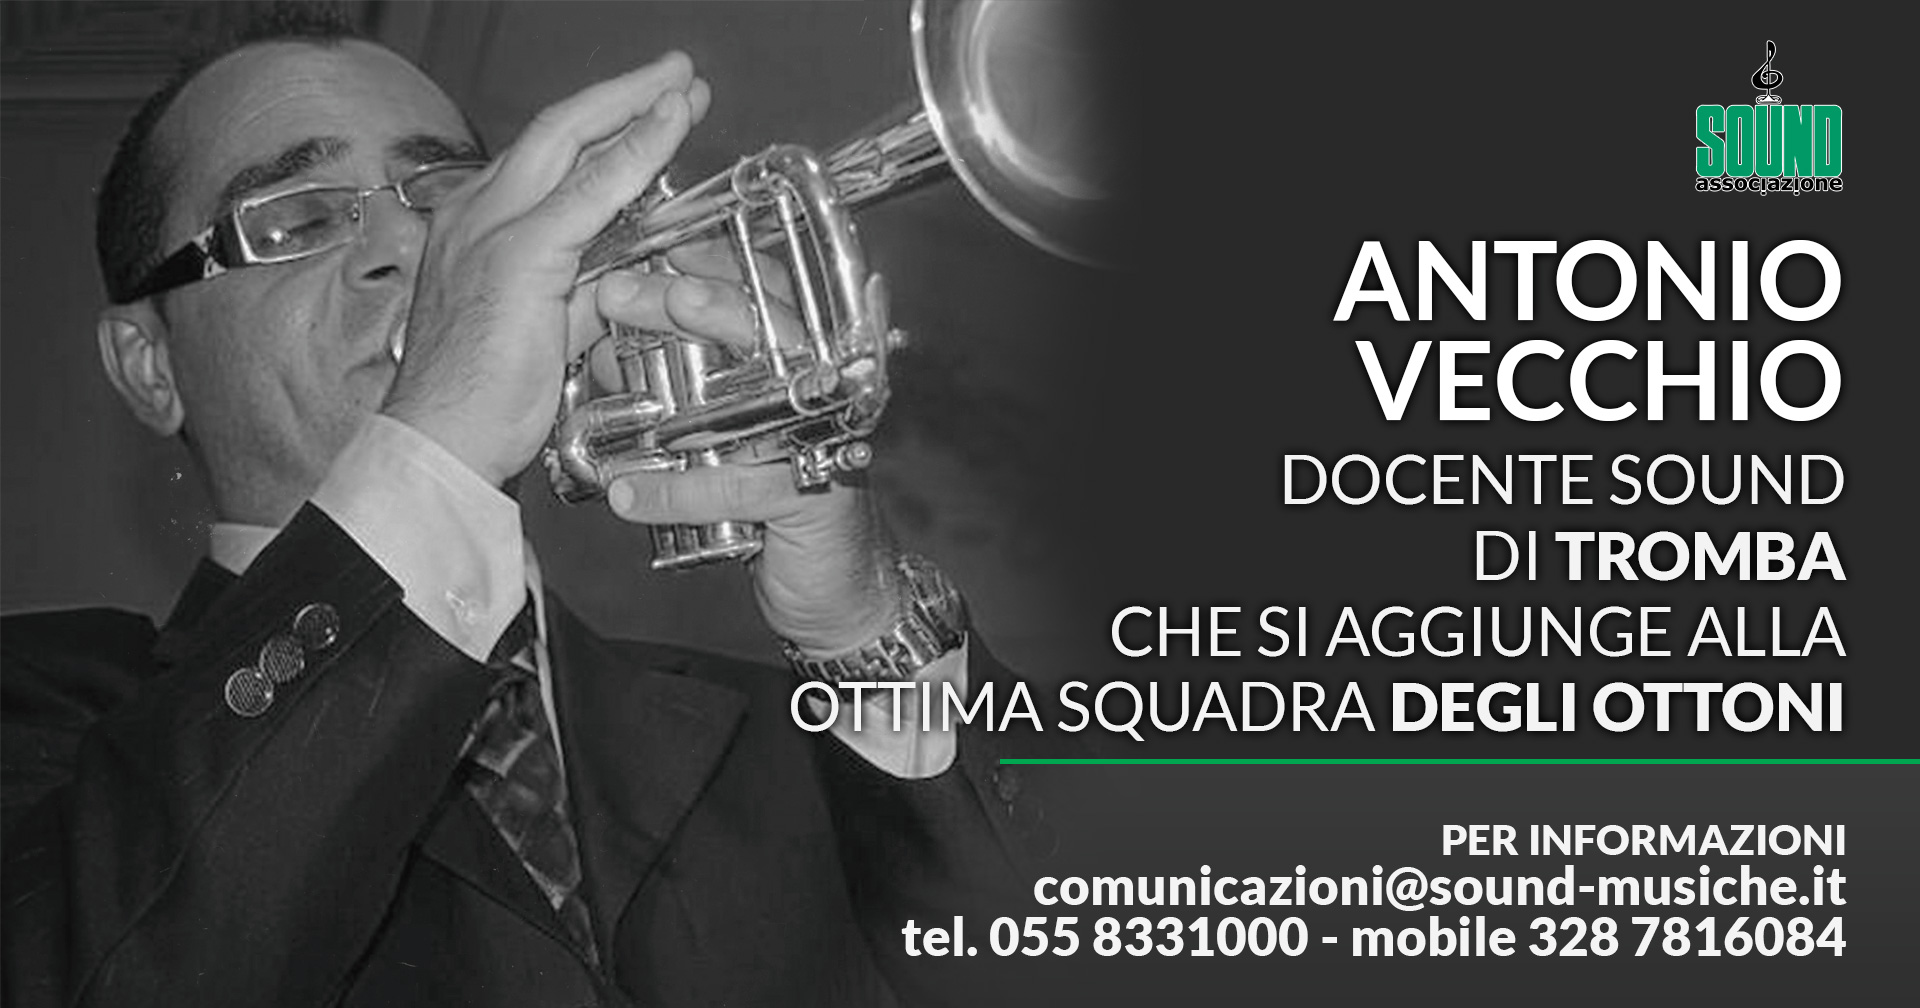 Antonio Vecchio nuovo docente di tromba Sound